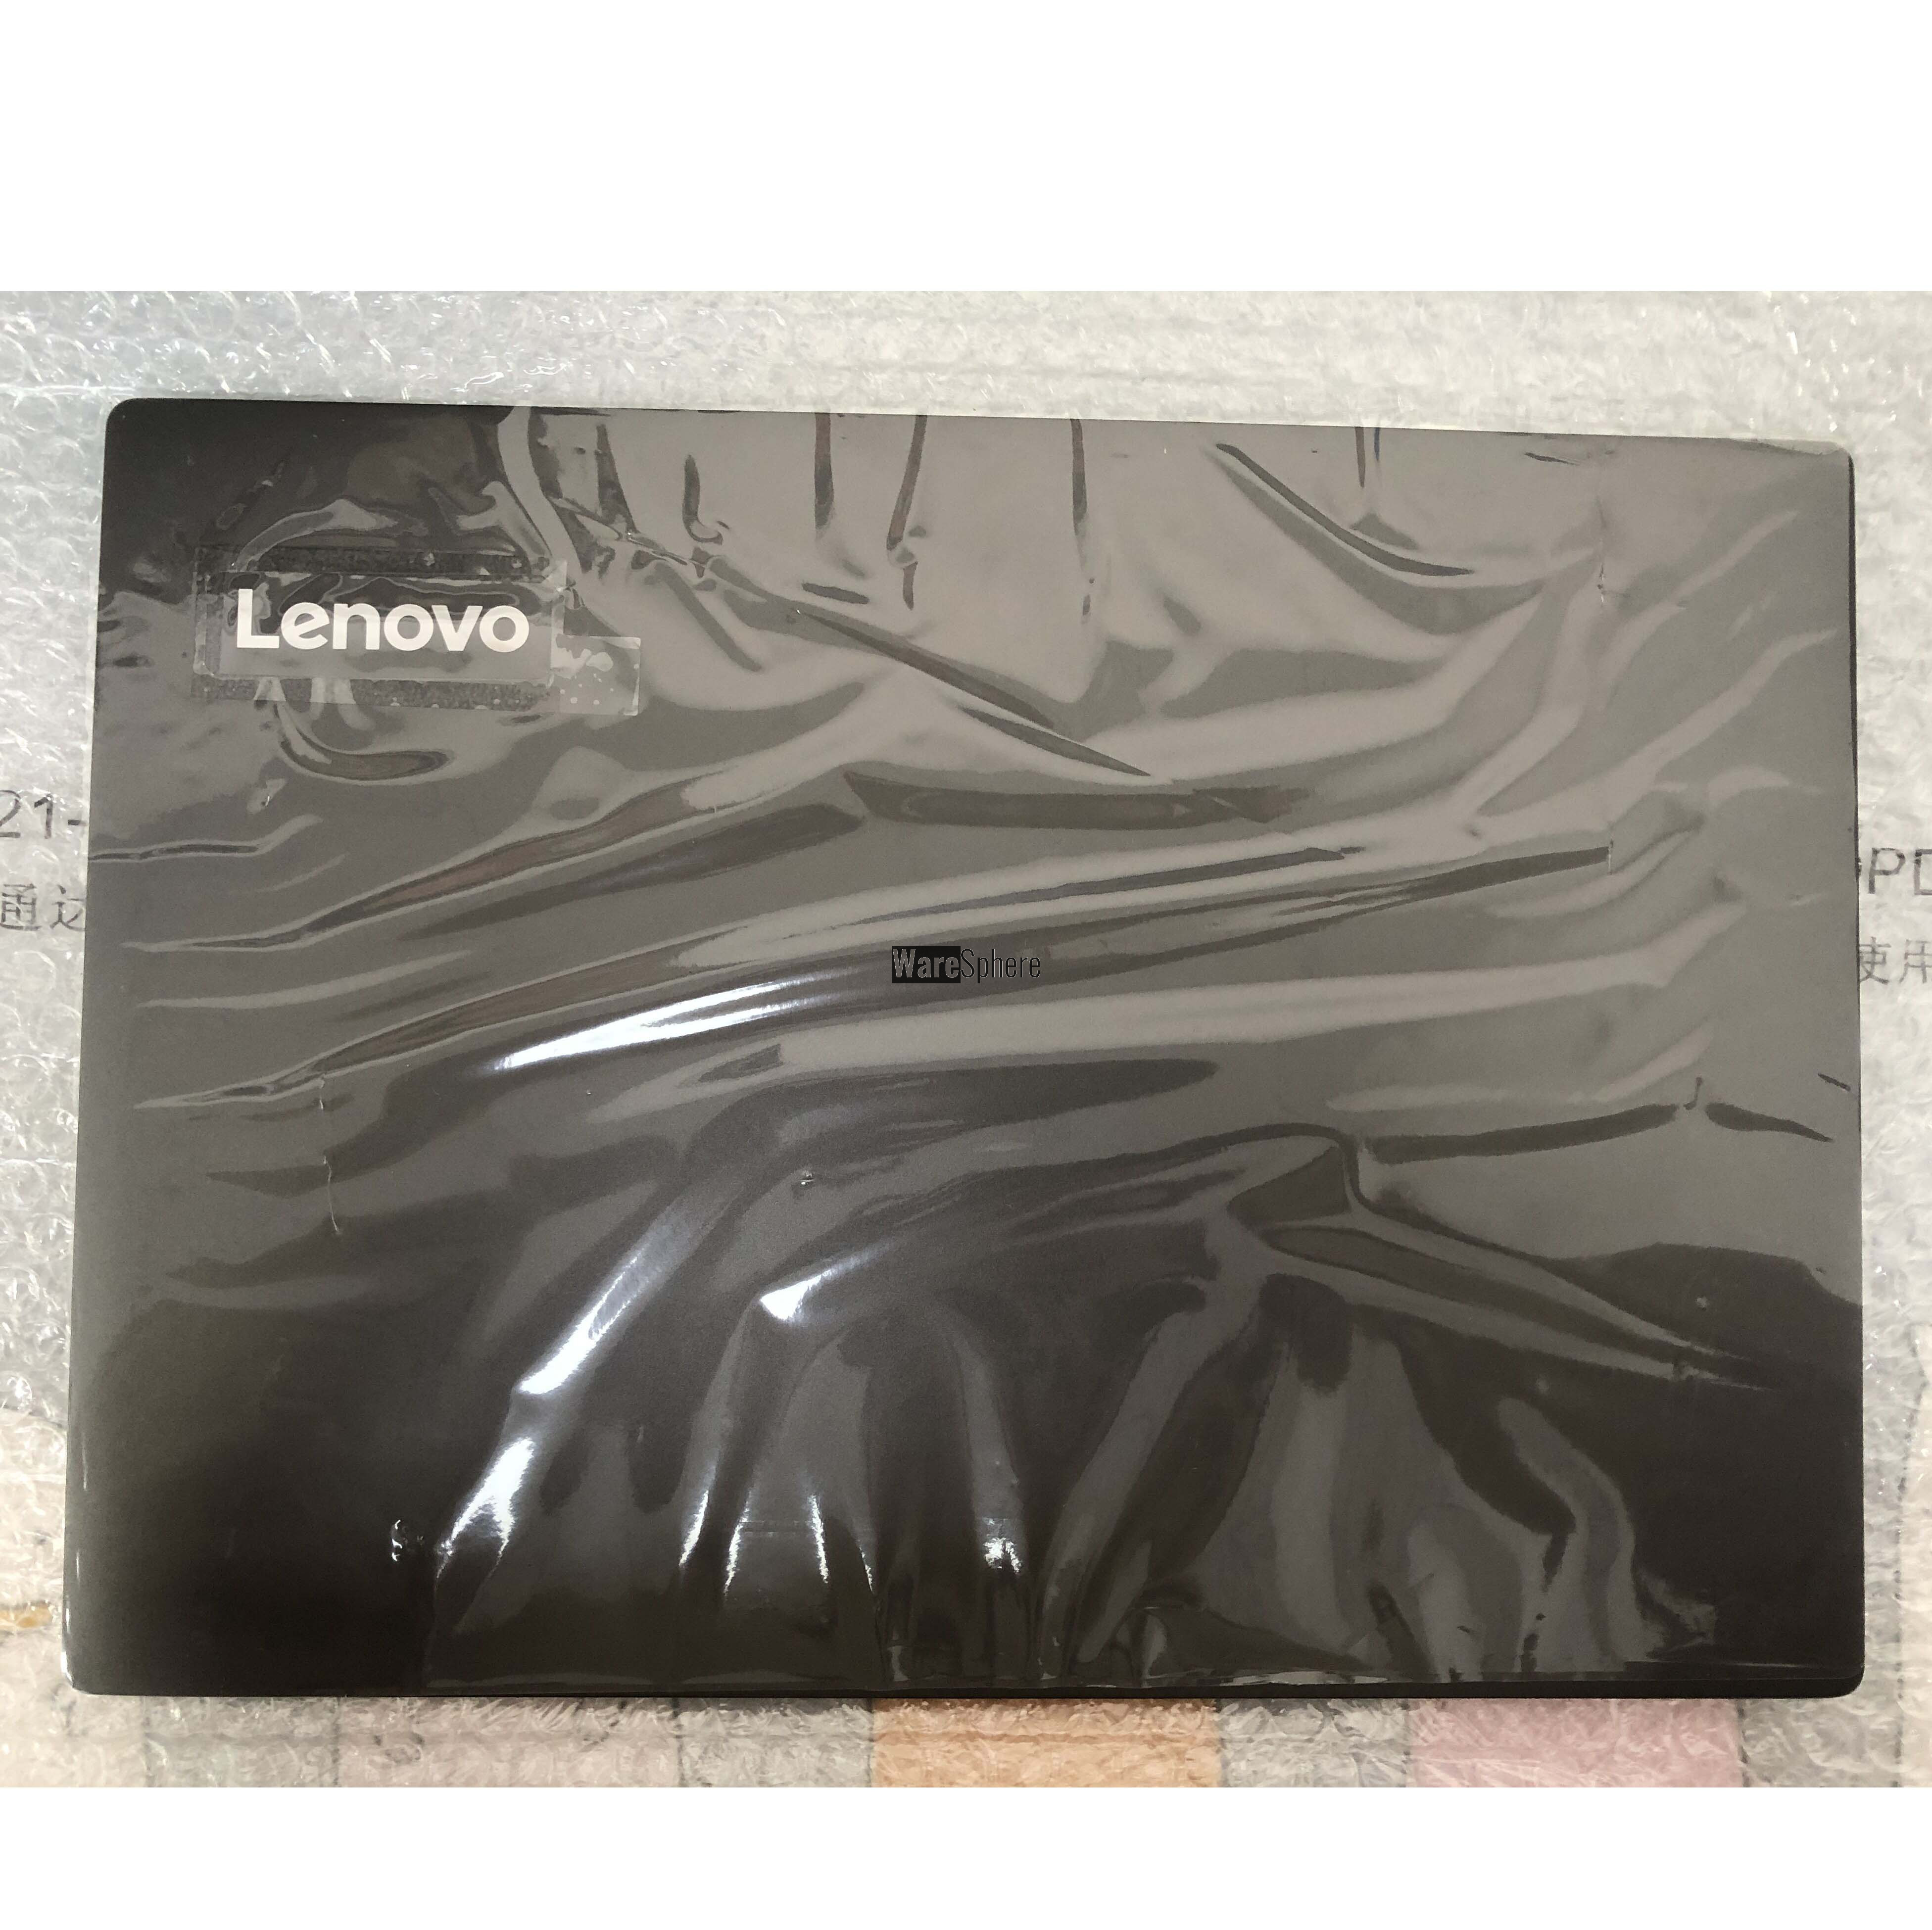 LCD Back Cover for Lenovo E43-80 K43-80 AM26A000300 Black